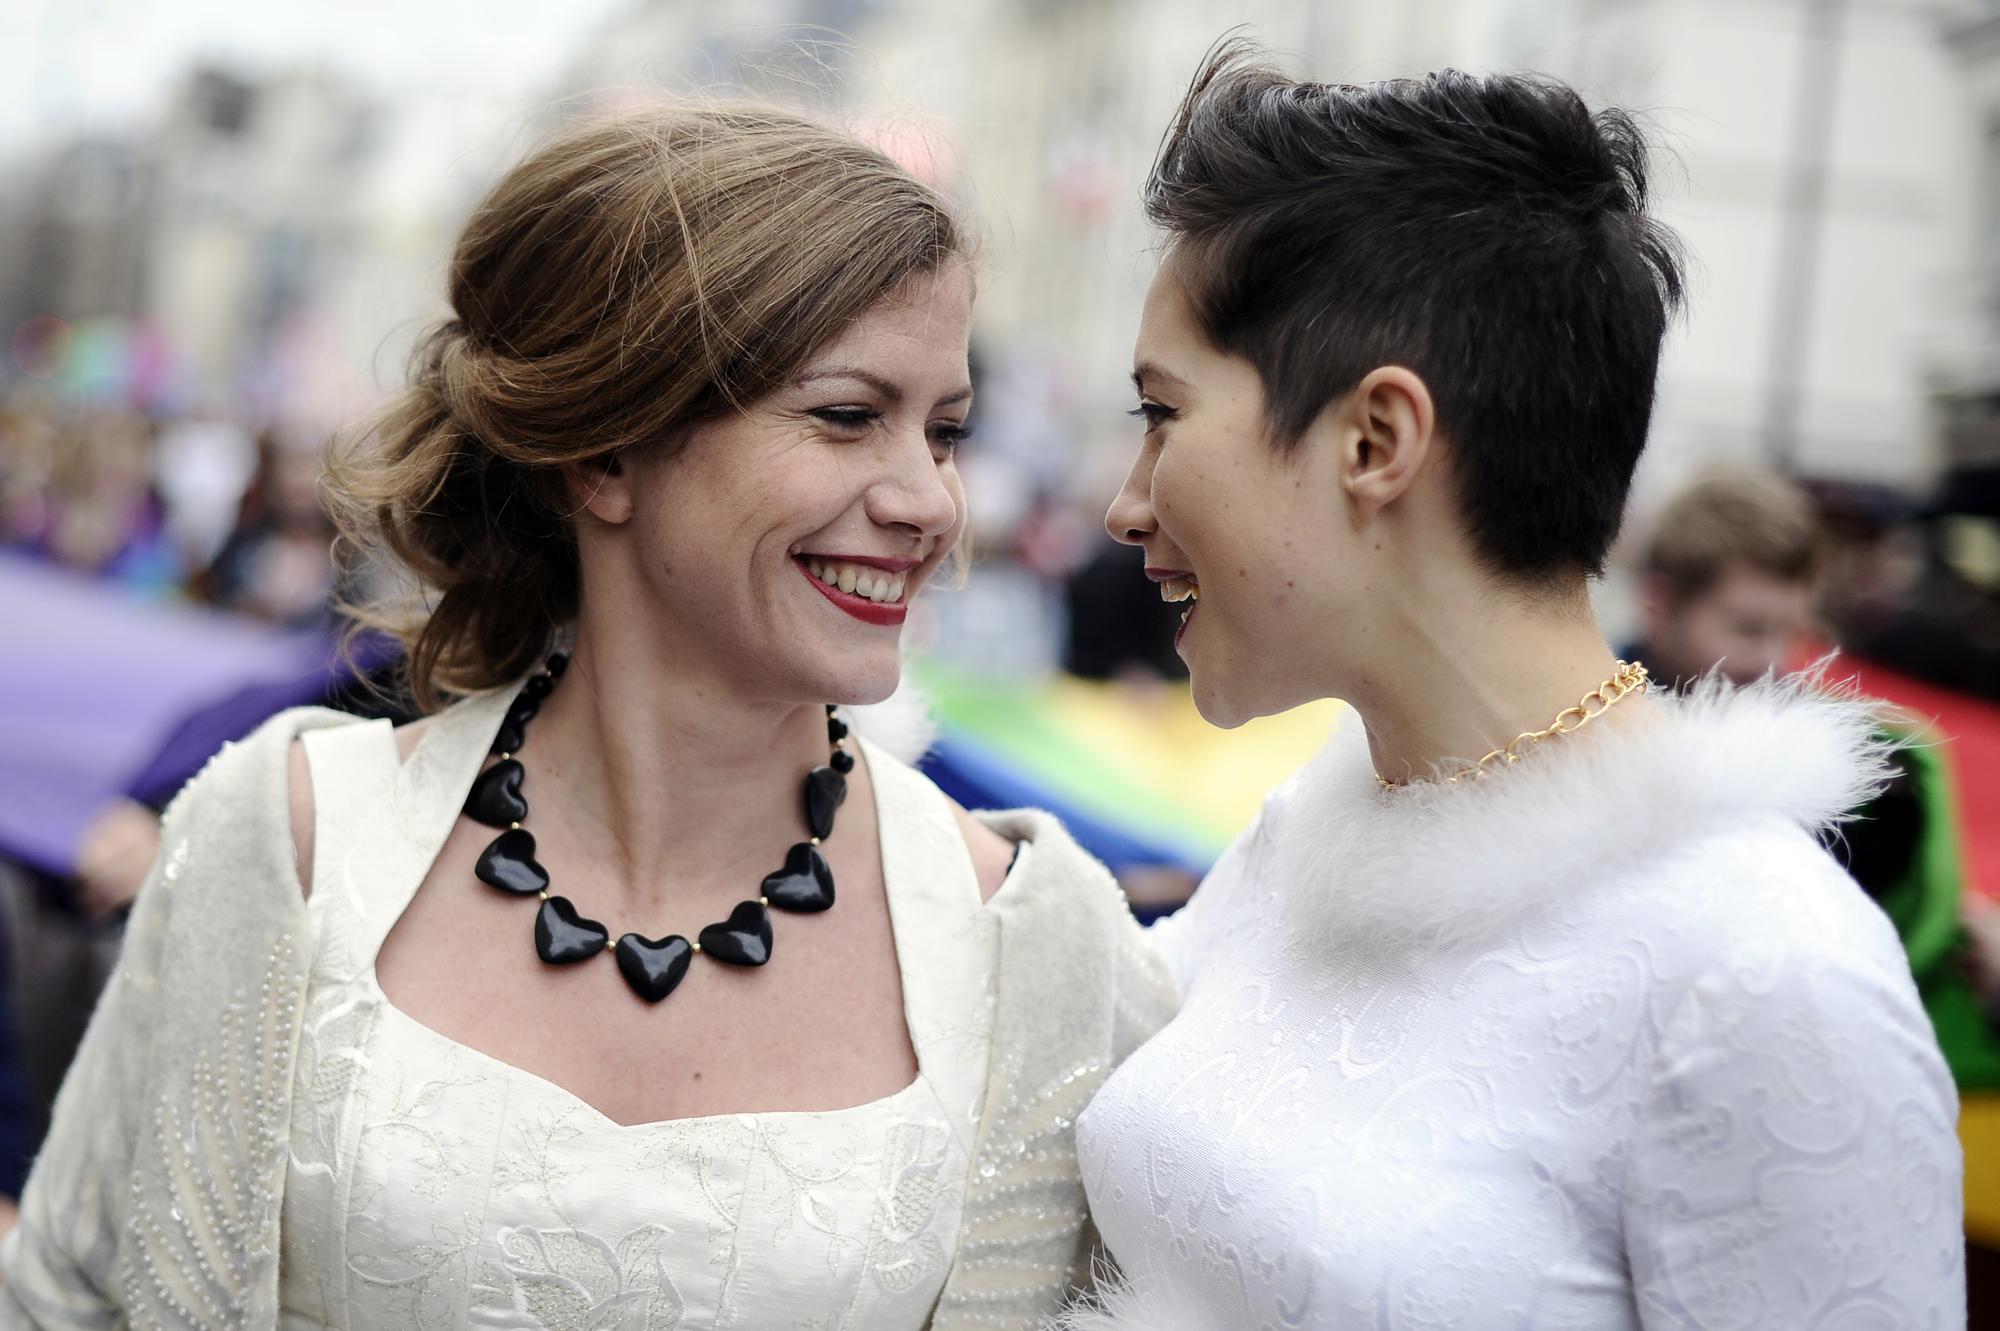 Le mariage gay devant la loi anglaise. [LIONEL BONAVENTURE]